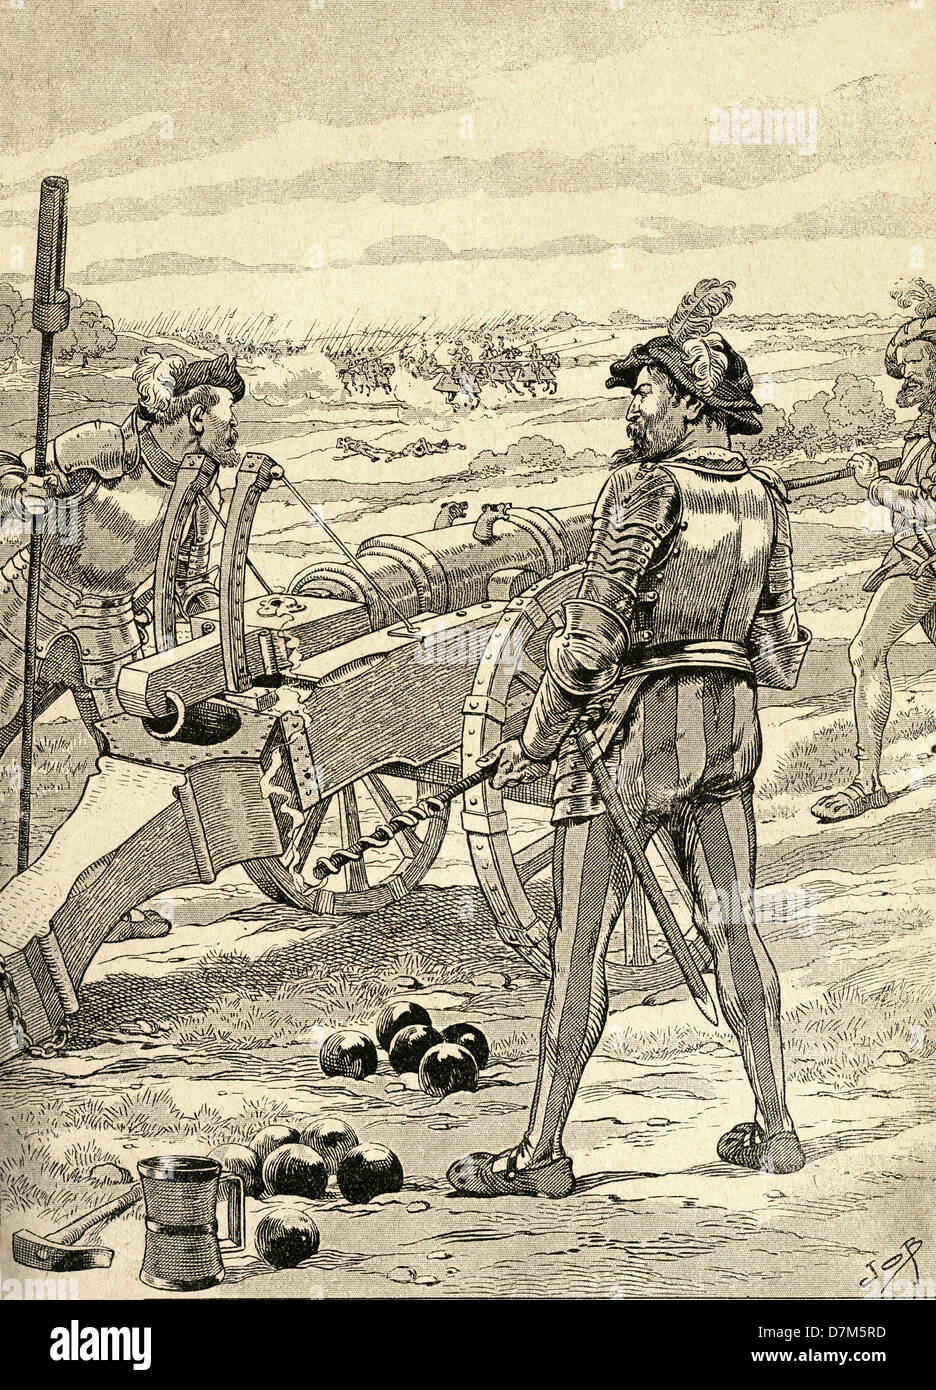 The Battle of Marignano, 1515. From Agenda Buvard du Bon Marche published 1917. Stock Photo